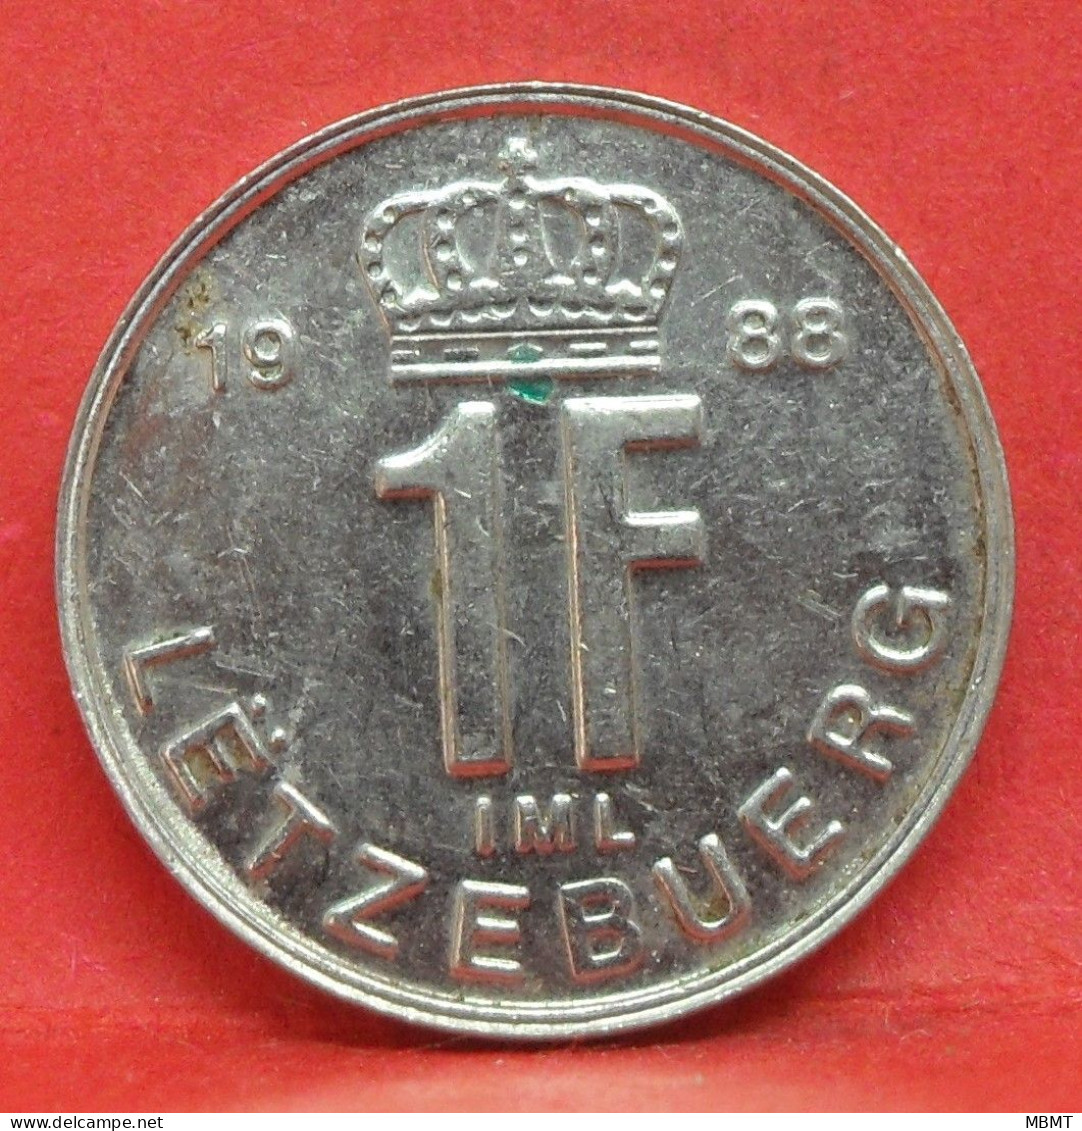 1 Franc 1988 - TTB - Pièce De Monnaie Luxembourg - Article N°3668 - Luxembourg